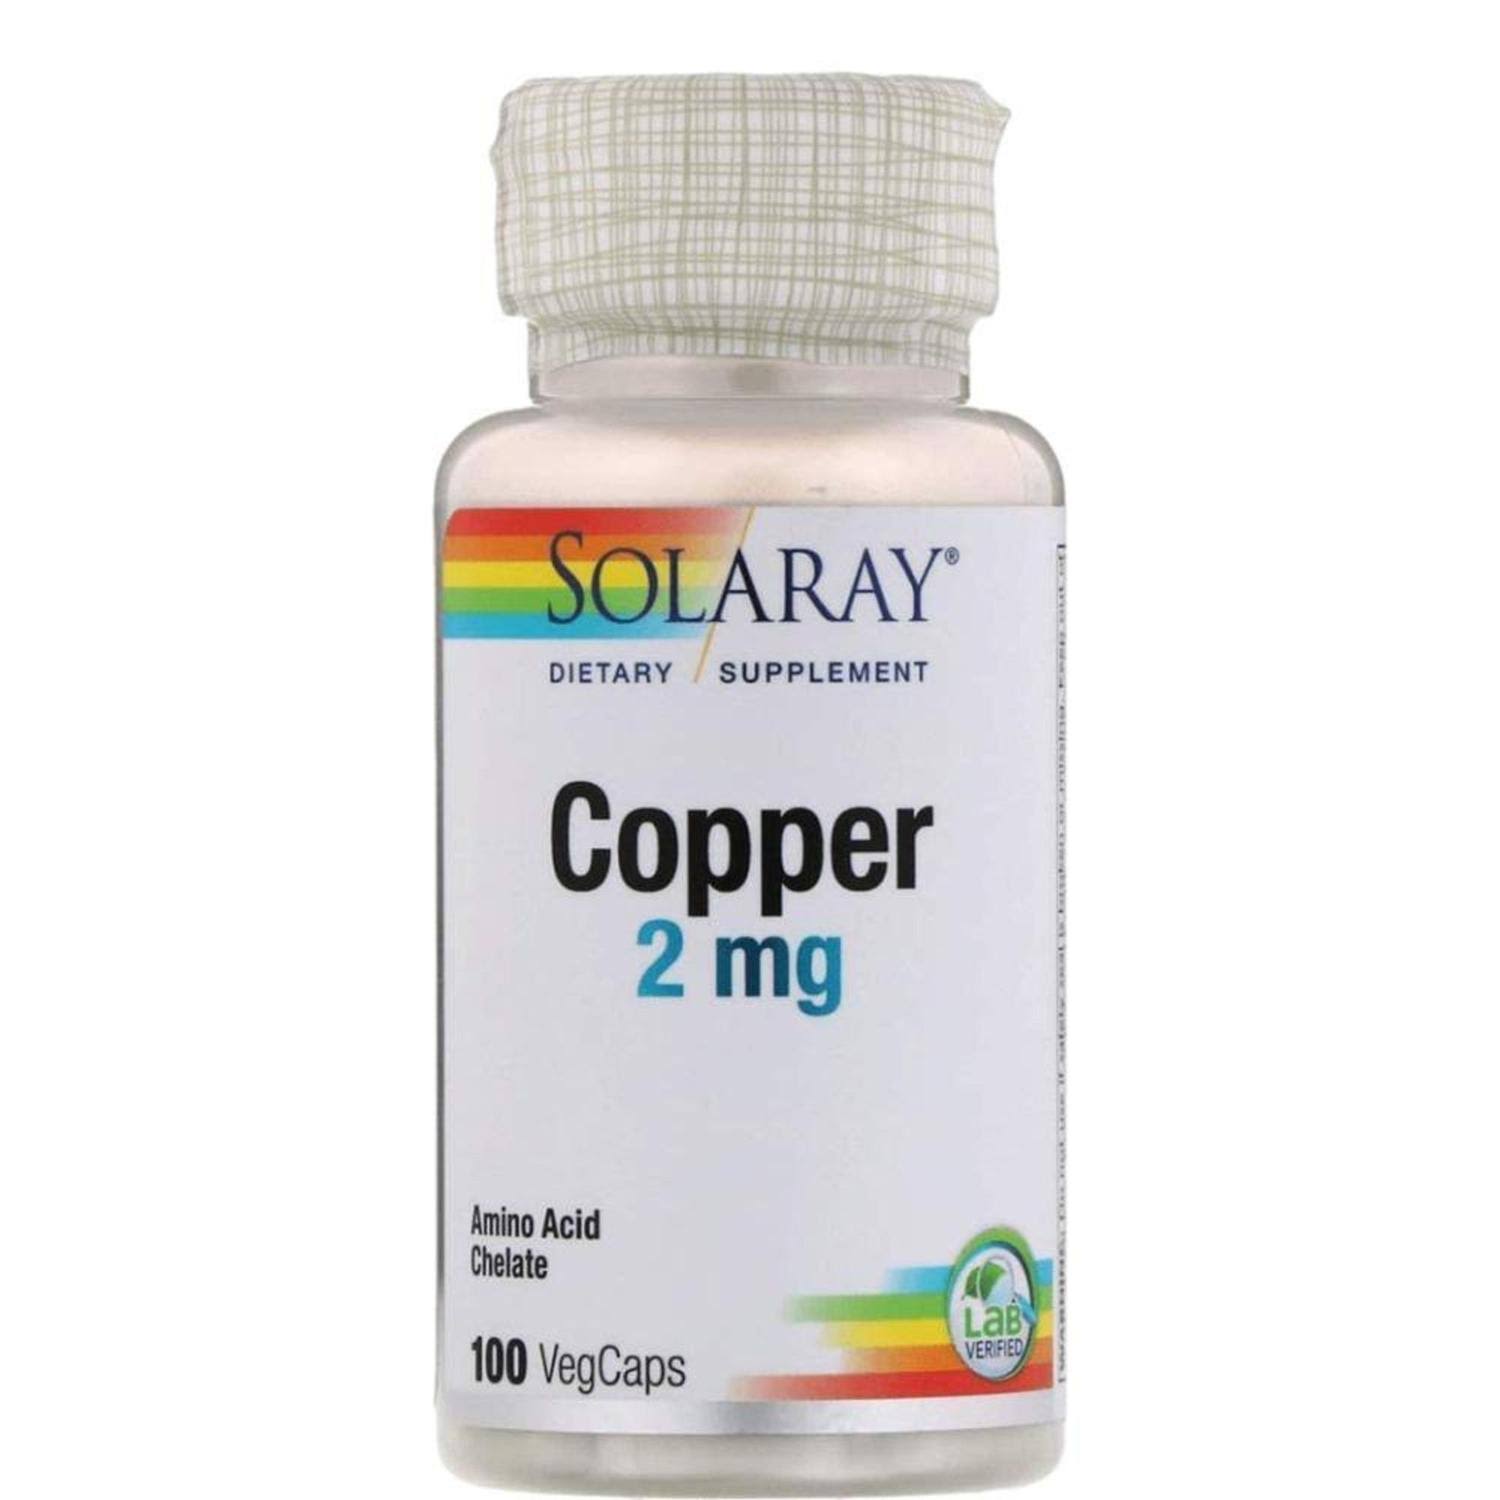 Solaray Copper Capsules - 2mg, 100 capsules